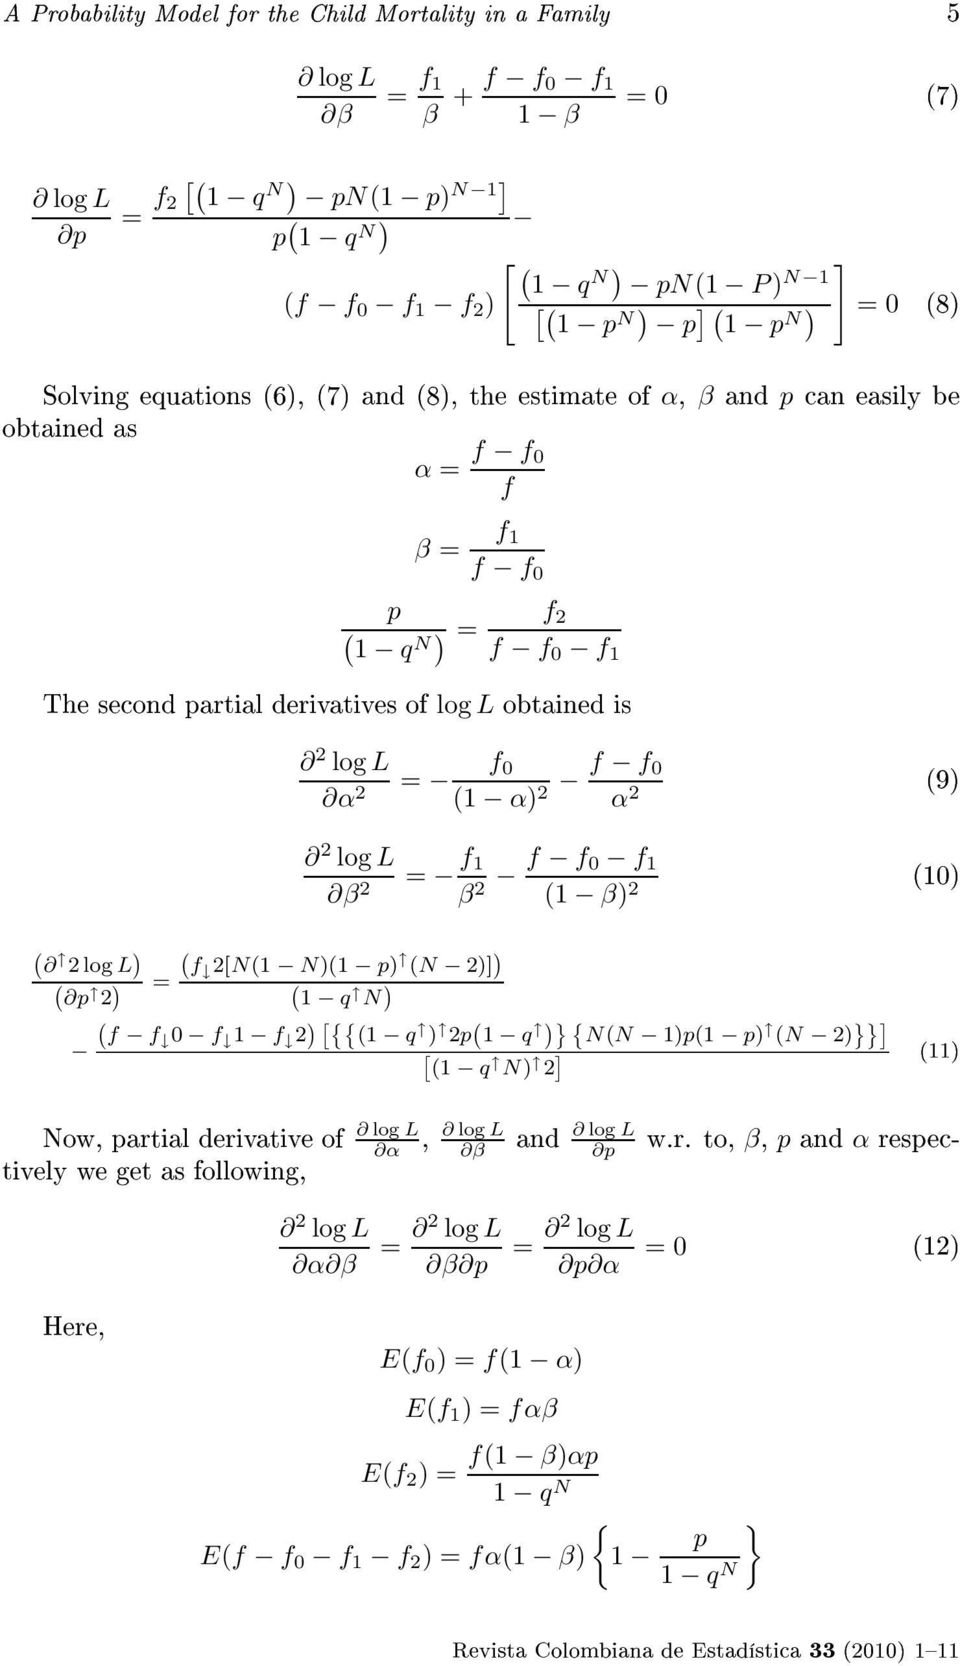 2 ( 2log L ) ( ( p 2 ) f = 2[N(1 N)(1 p) (N 2)] ) ( 1 q N ) 2 log L β 2 = f 1 β 2 f f 0 f 1 (1 β) 2 è¾üì ( f f 0 f 1 f 2 ) [{{ (1 q ) 2p ( 1 q )} { N(N 1)p(1 p) (N 2) }}] [ (1 q N) 2 ] áéõâ ÖÐÏÓÌÐÒ